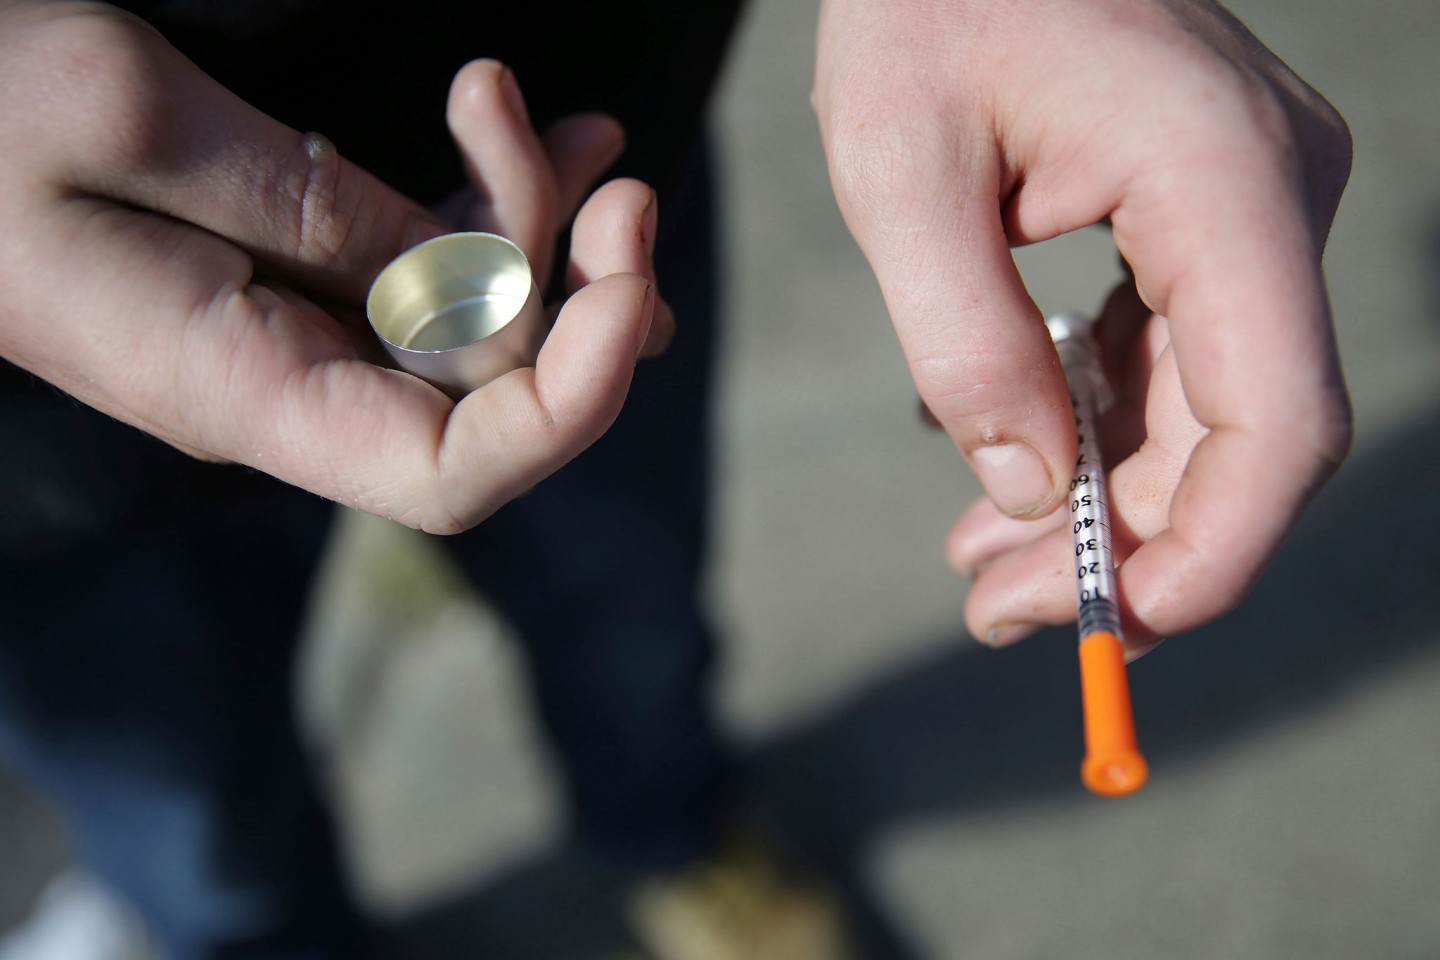 Ein Mann in Philadelphia hält eine Spritze für eine Fentanyl-Injektion in der Hand.